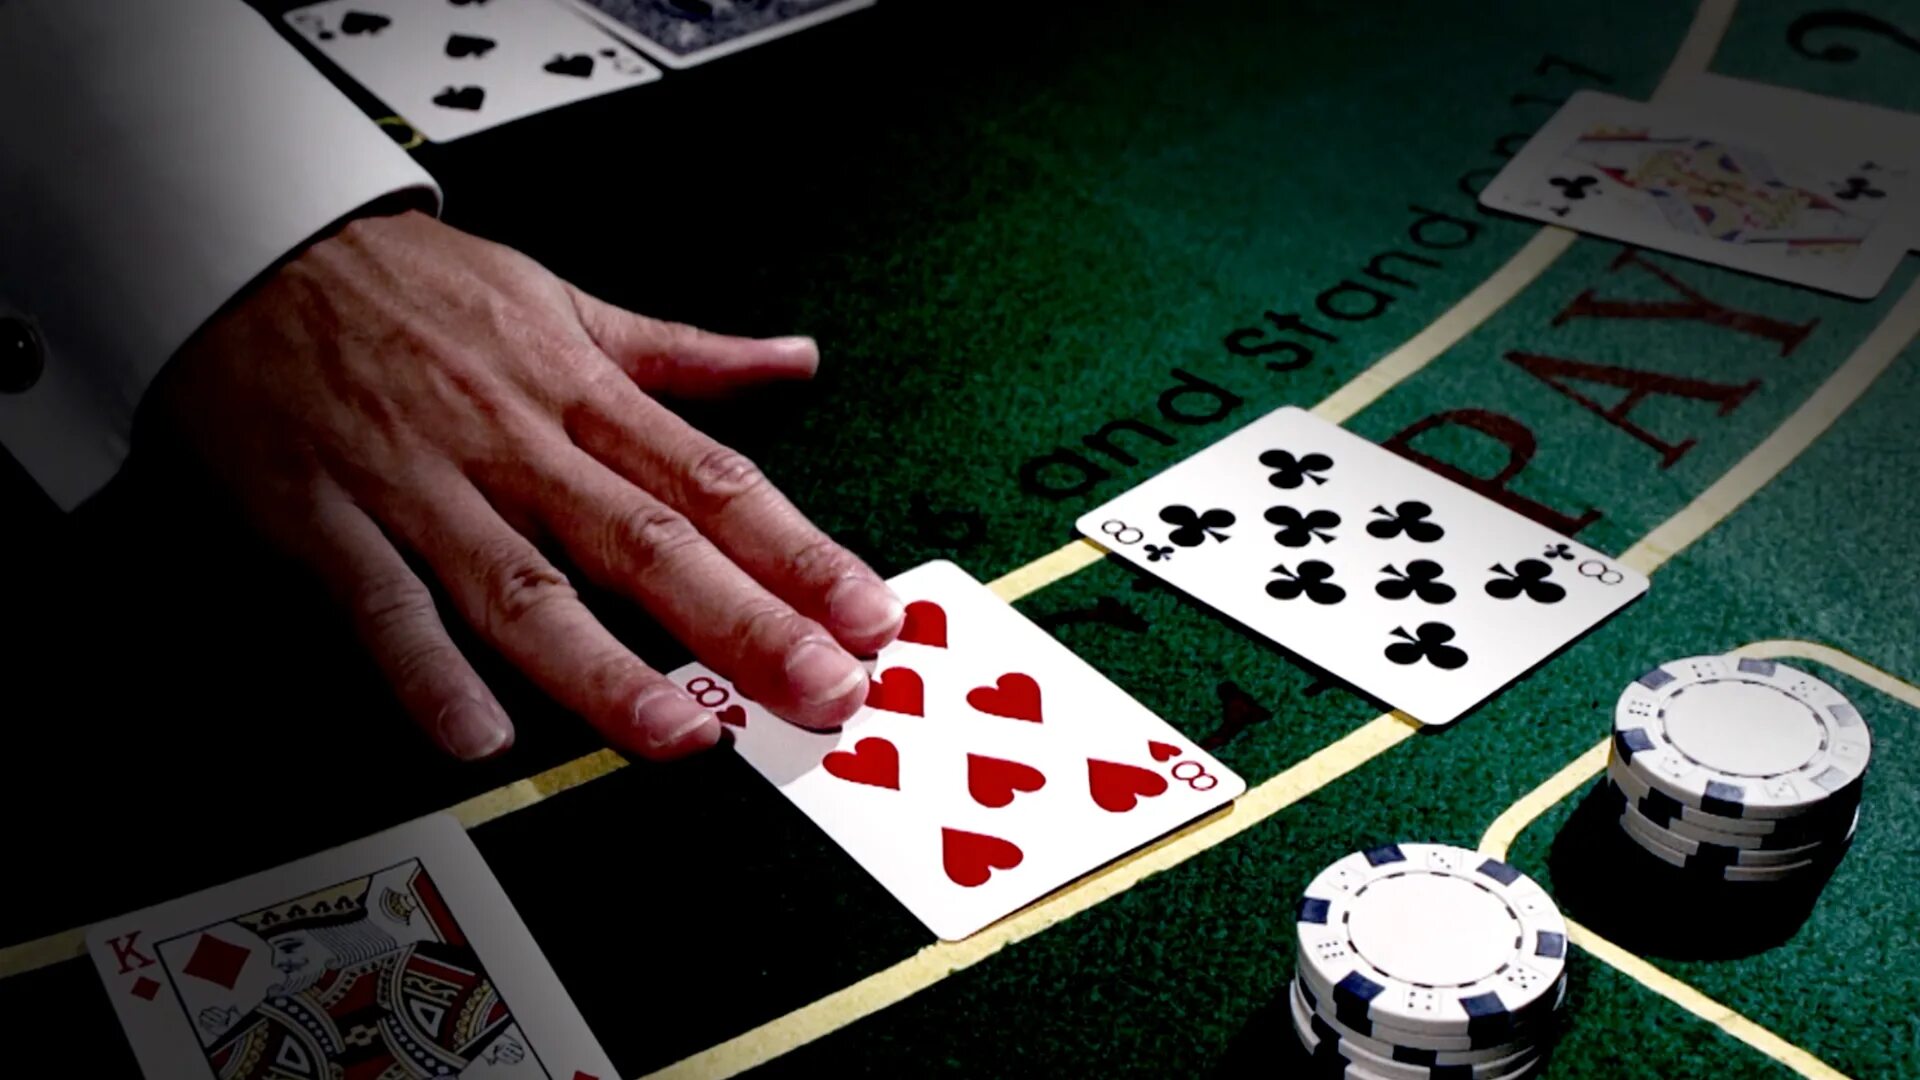 Азартная карточная игра. Баккара азартная игра. Карты азартные игры казино. Интернет казино - игровые автоматы, Покер, карточные игры, Poker, Рулетка. Бесплатные деньги в азартных играх